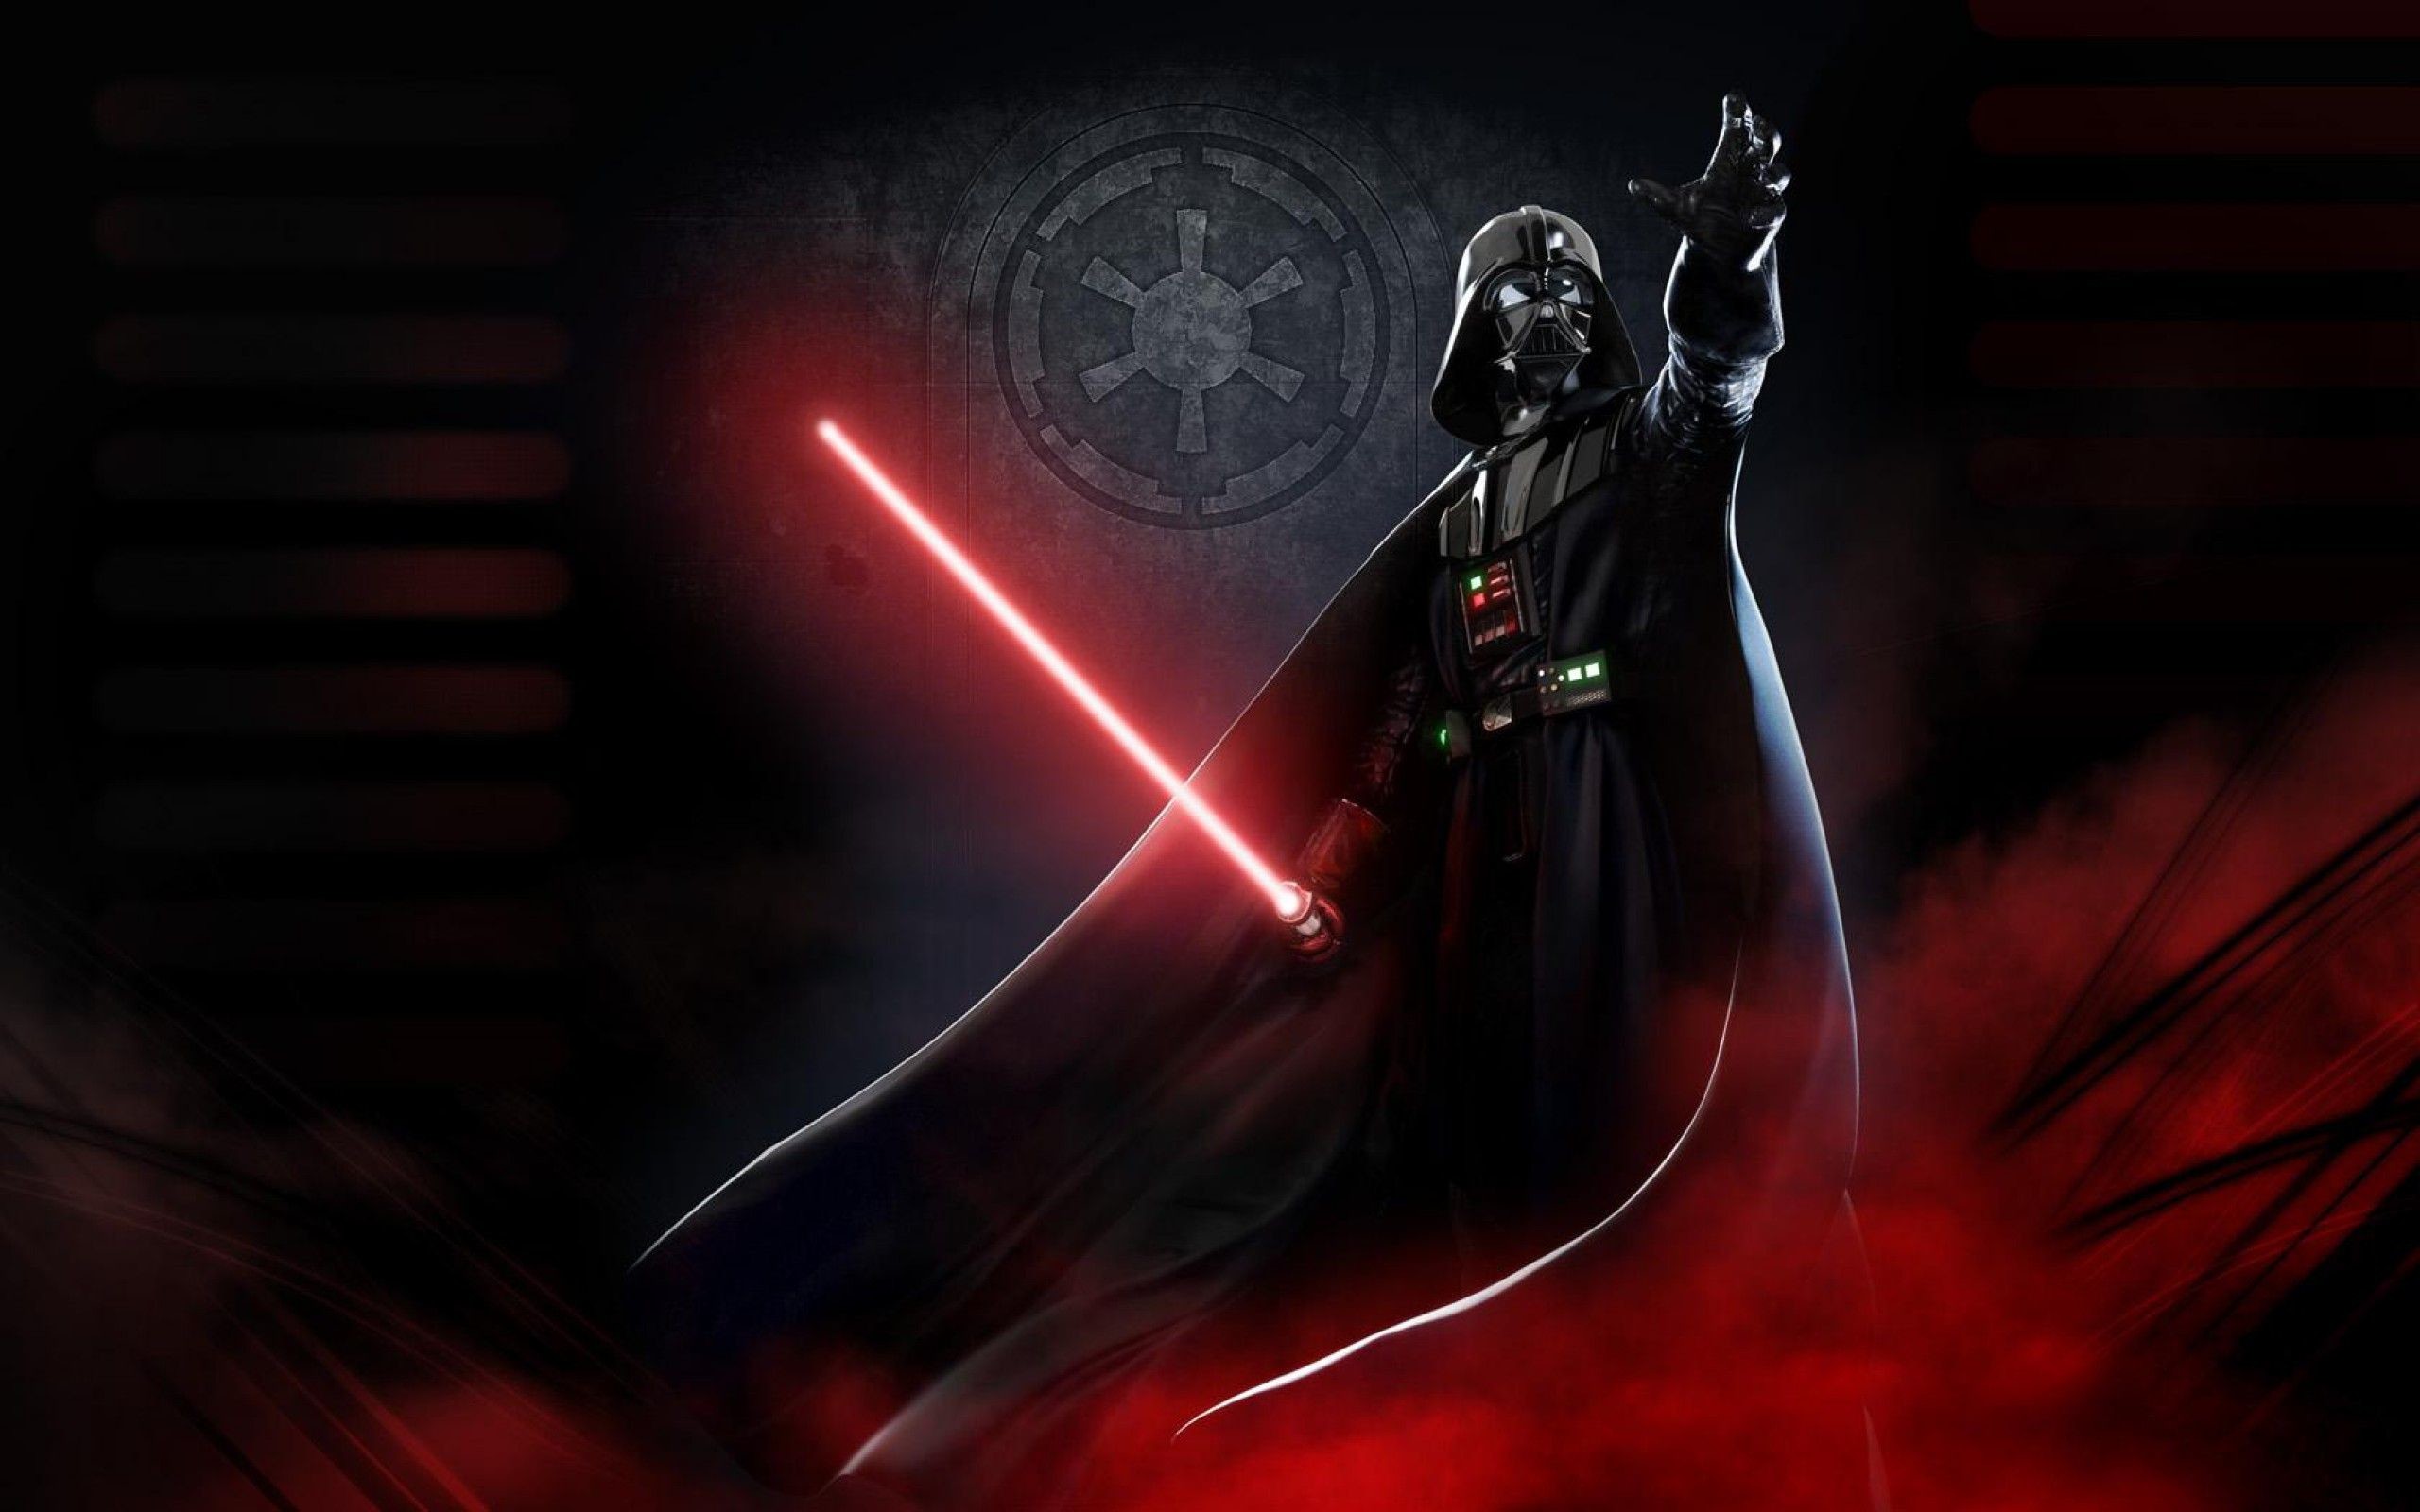 2560x1600, Darth Vader Wallpaper Hd - Darth Vader - 2560x1600 Wallpaper -  